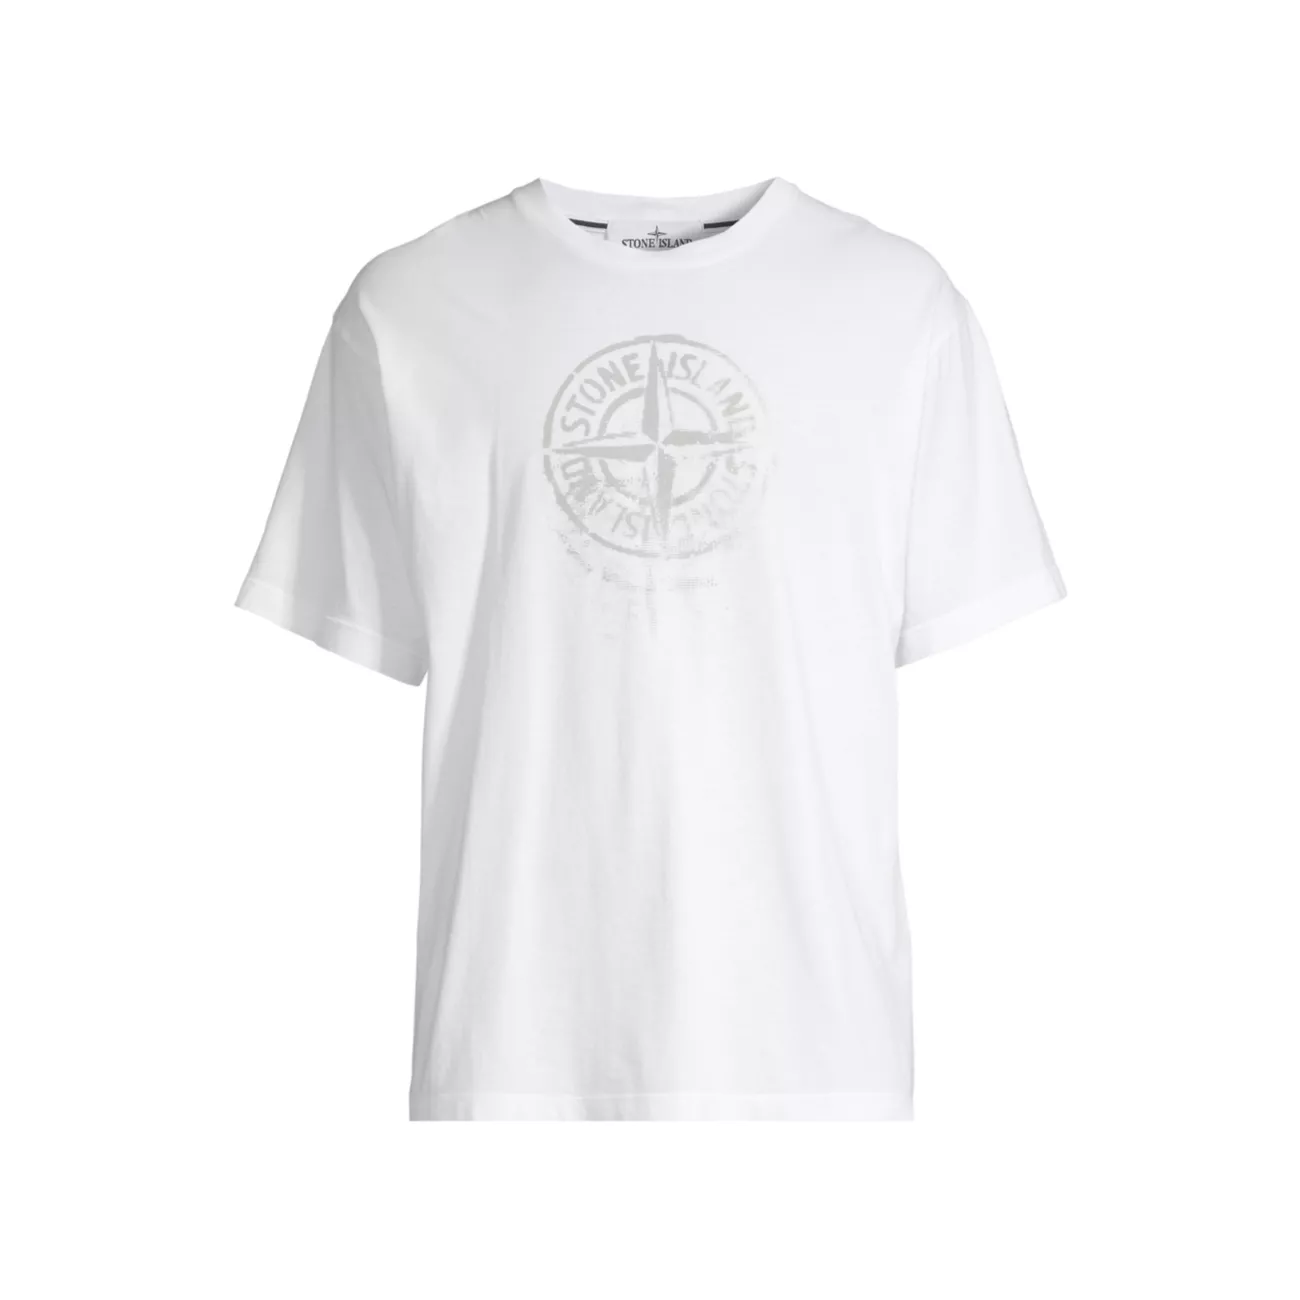 Хлопковая футболка со светоотражающим компасом Stone Island